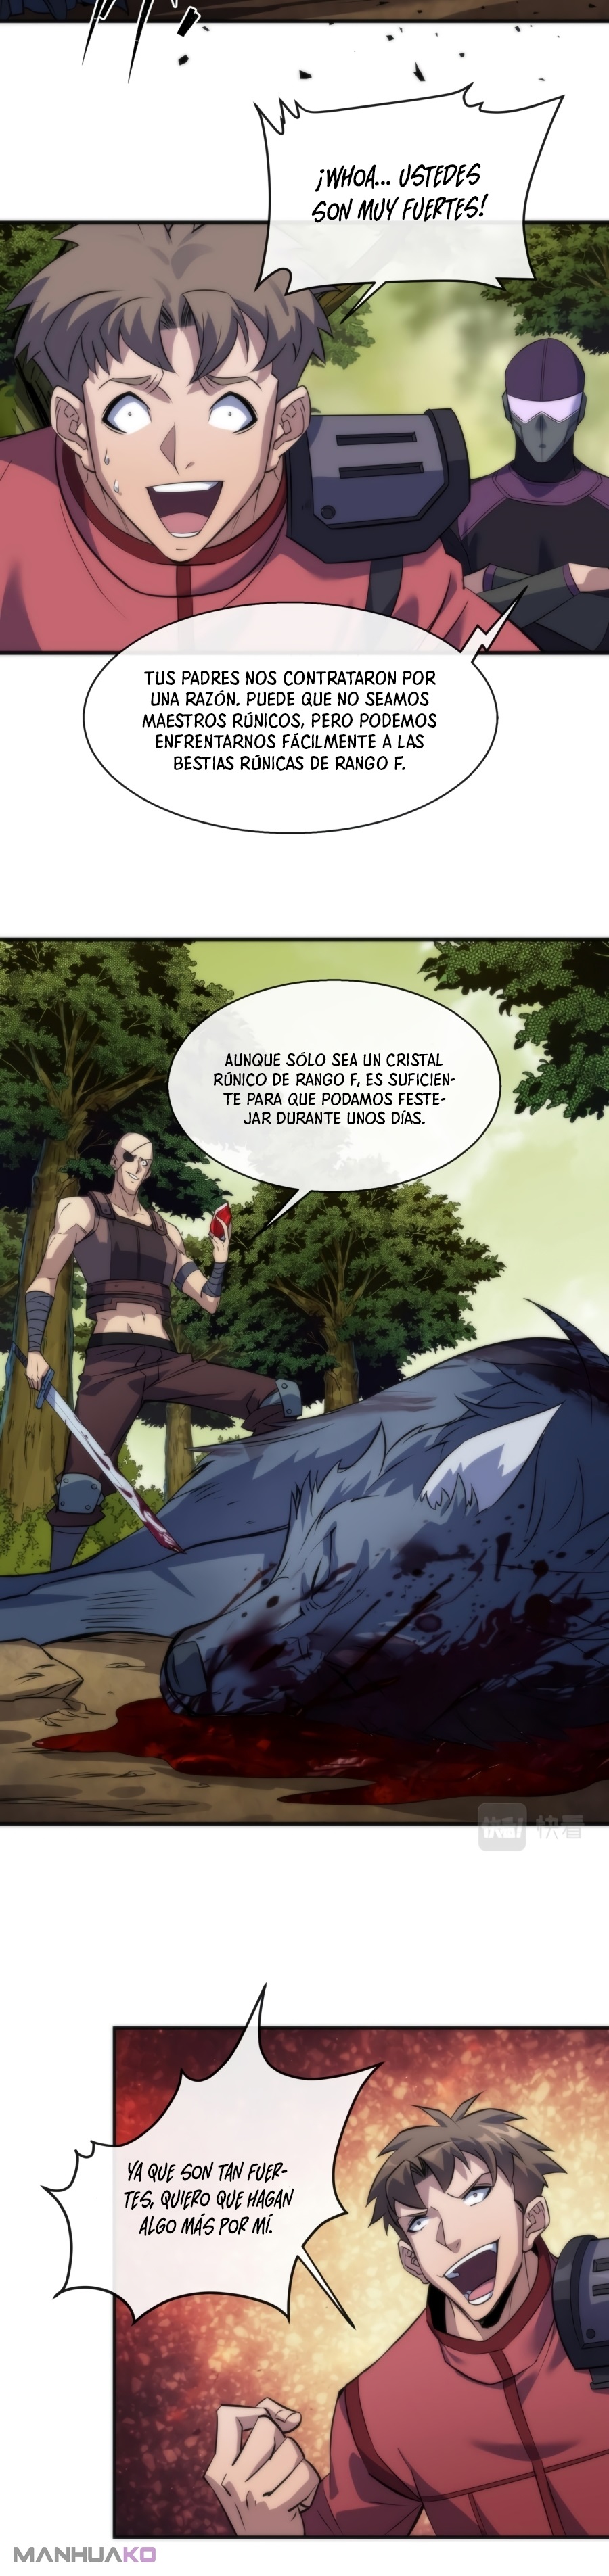 Manga Rey de las runas Chapter 19 image number 7